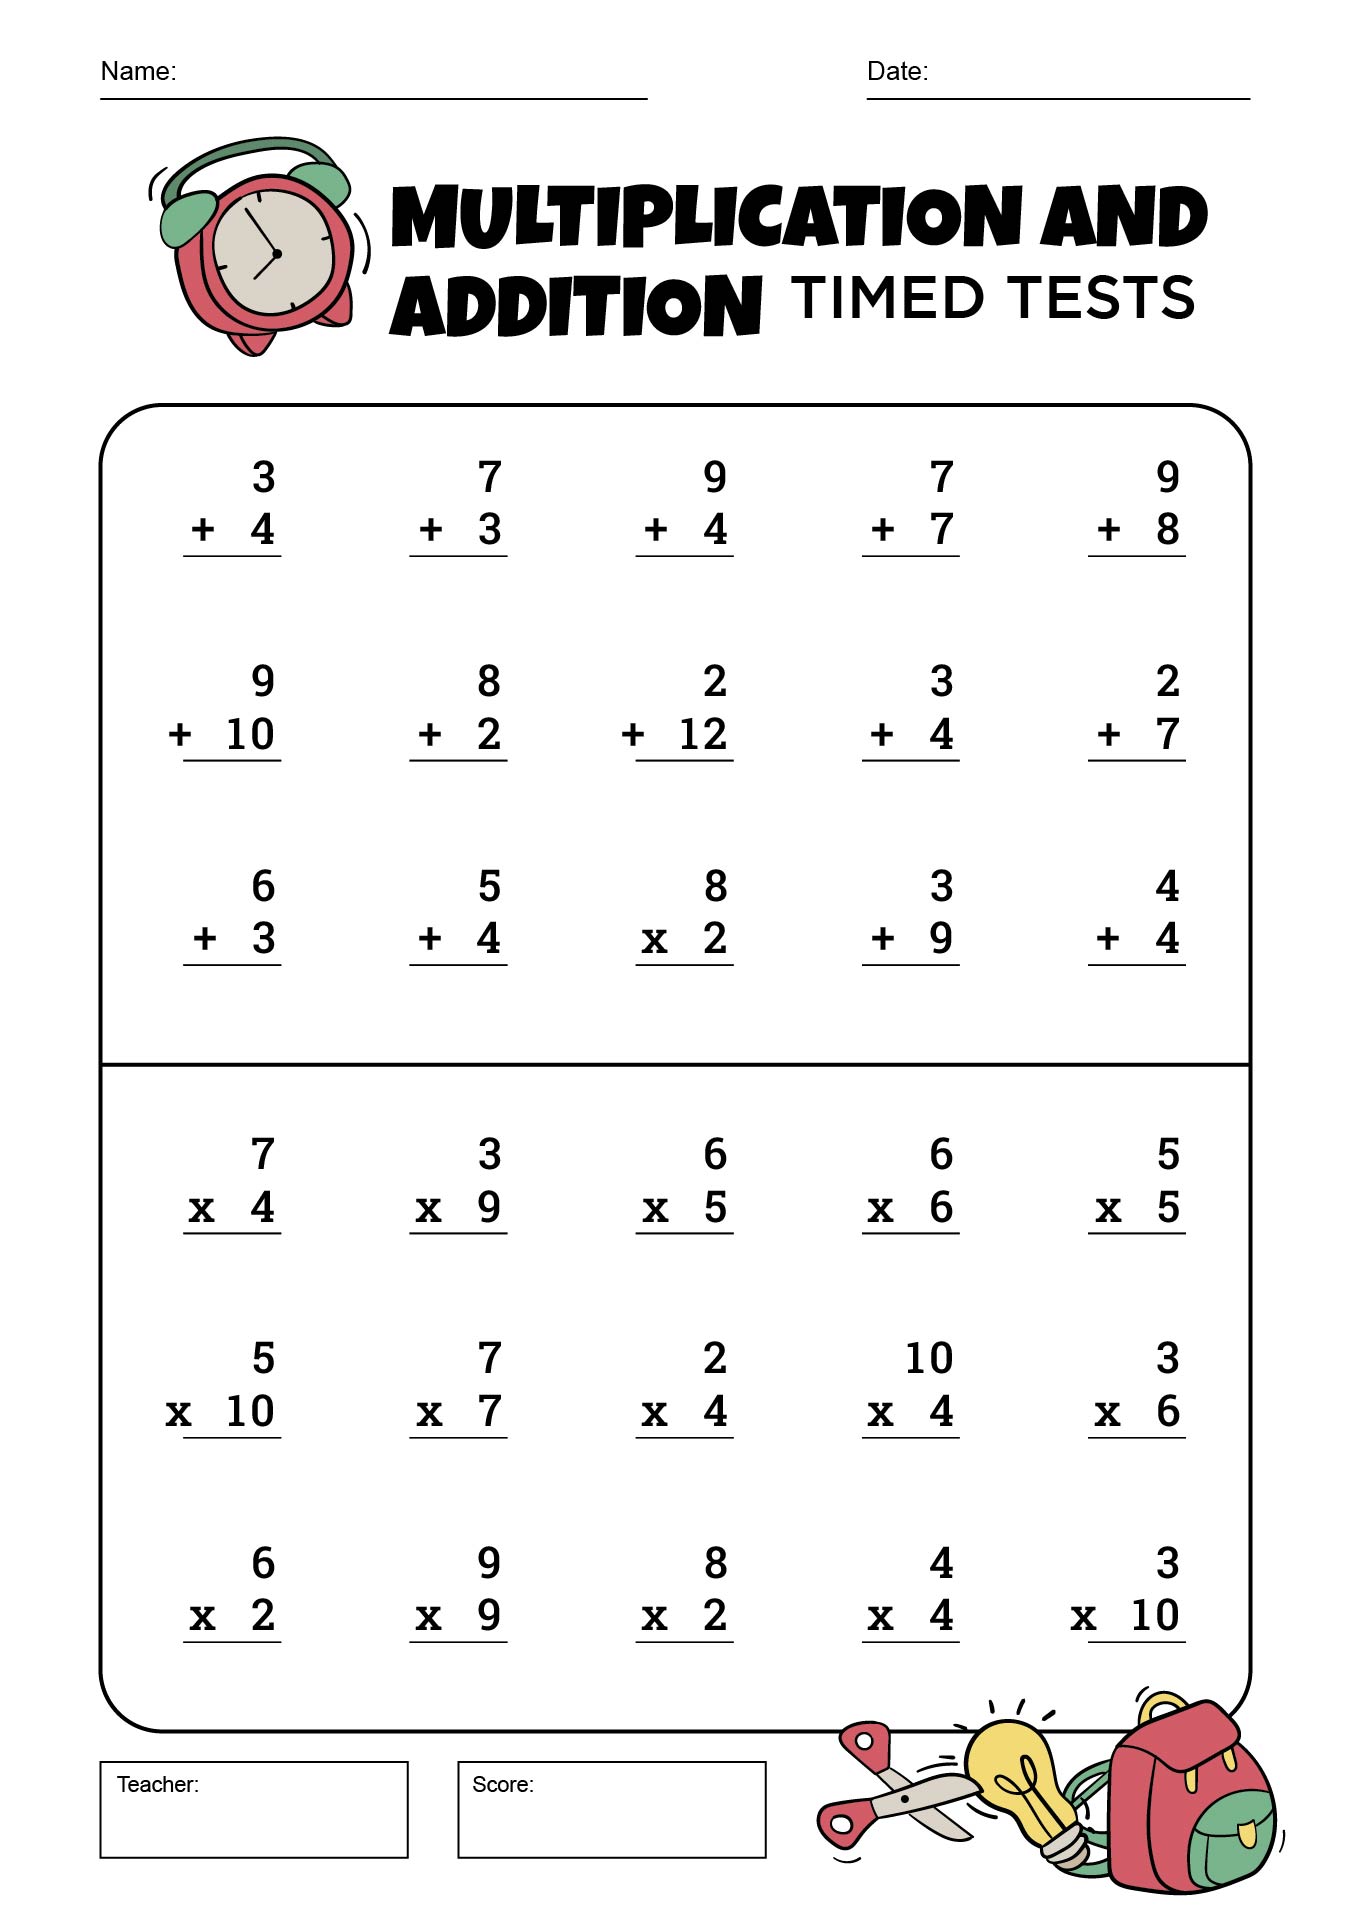 Math Addition Timed Tests Worksheets